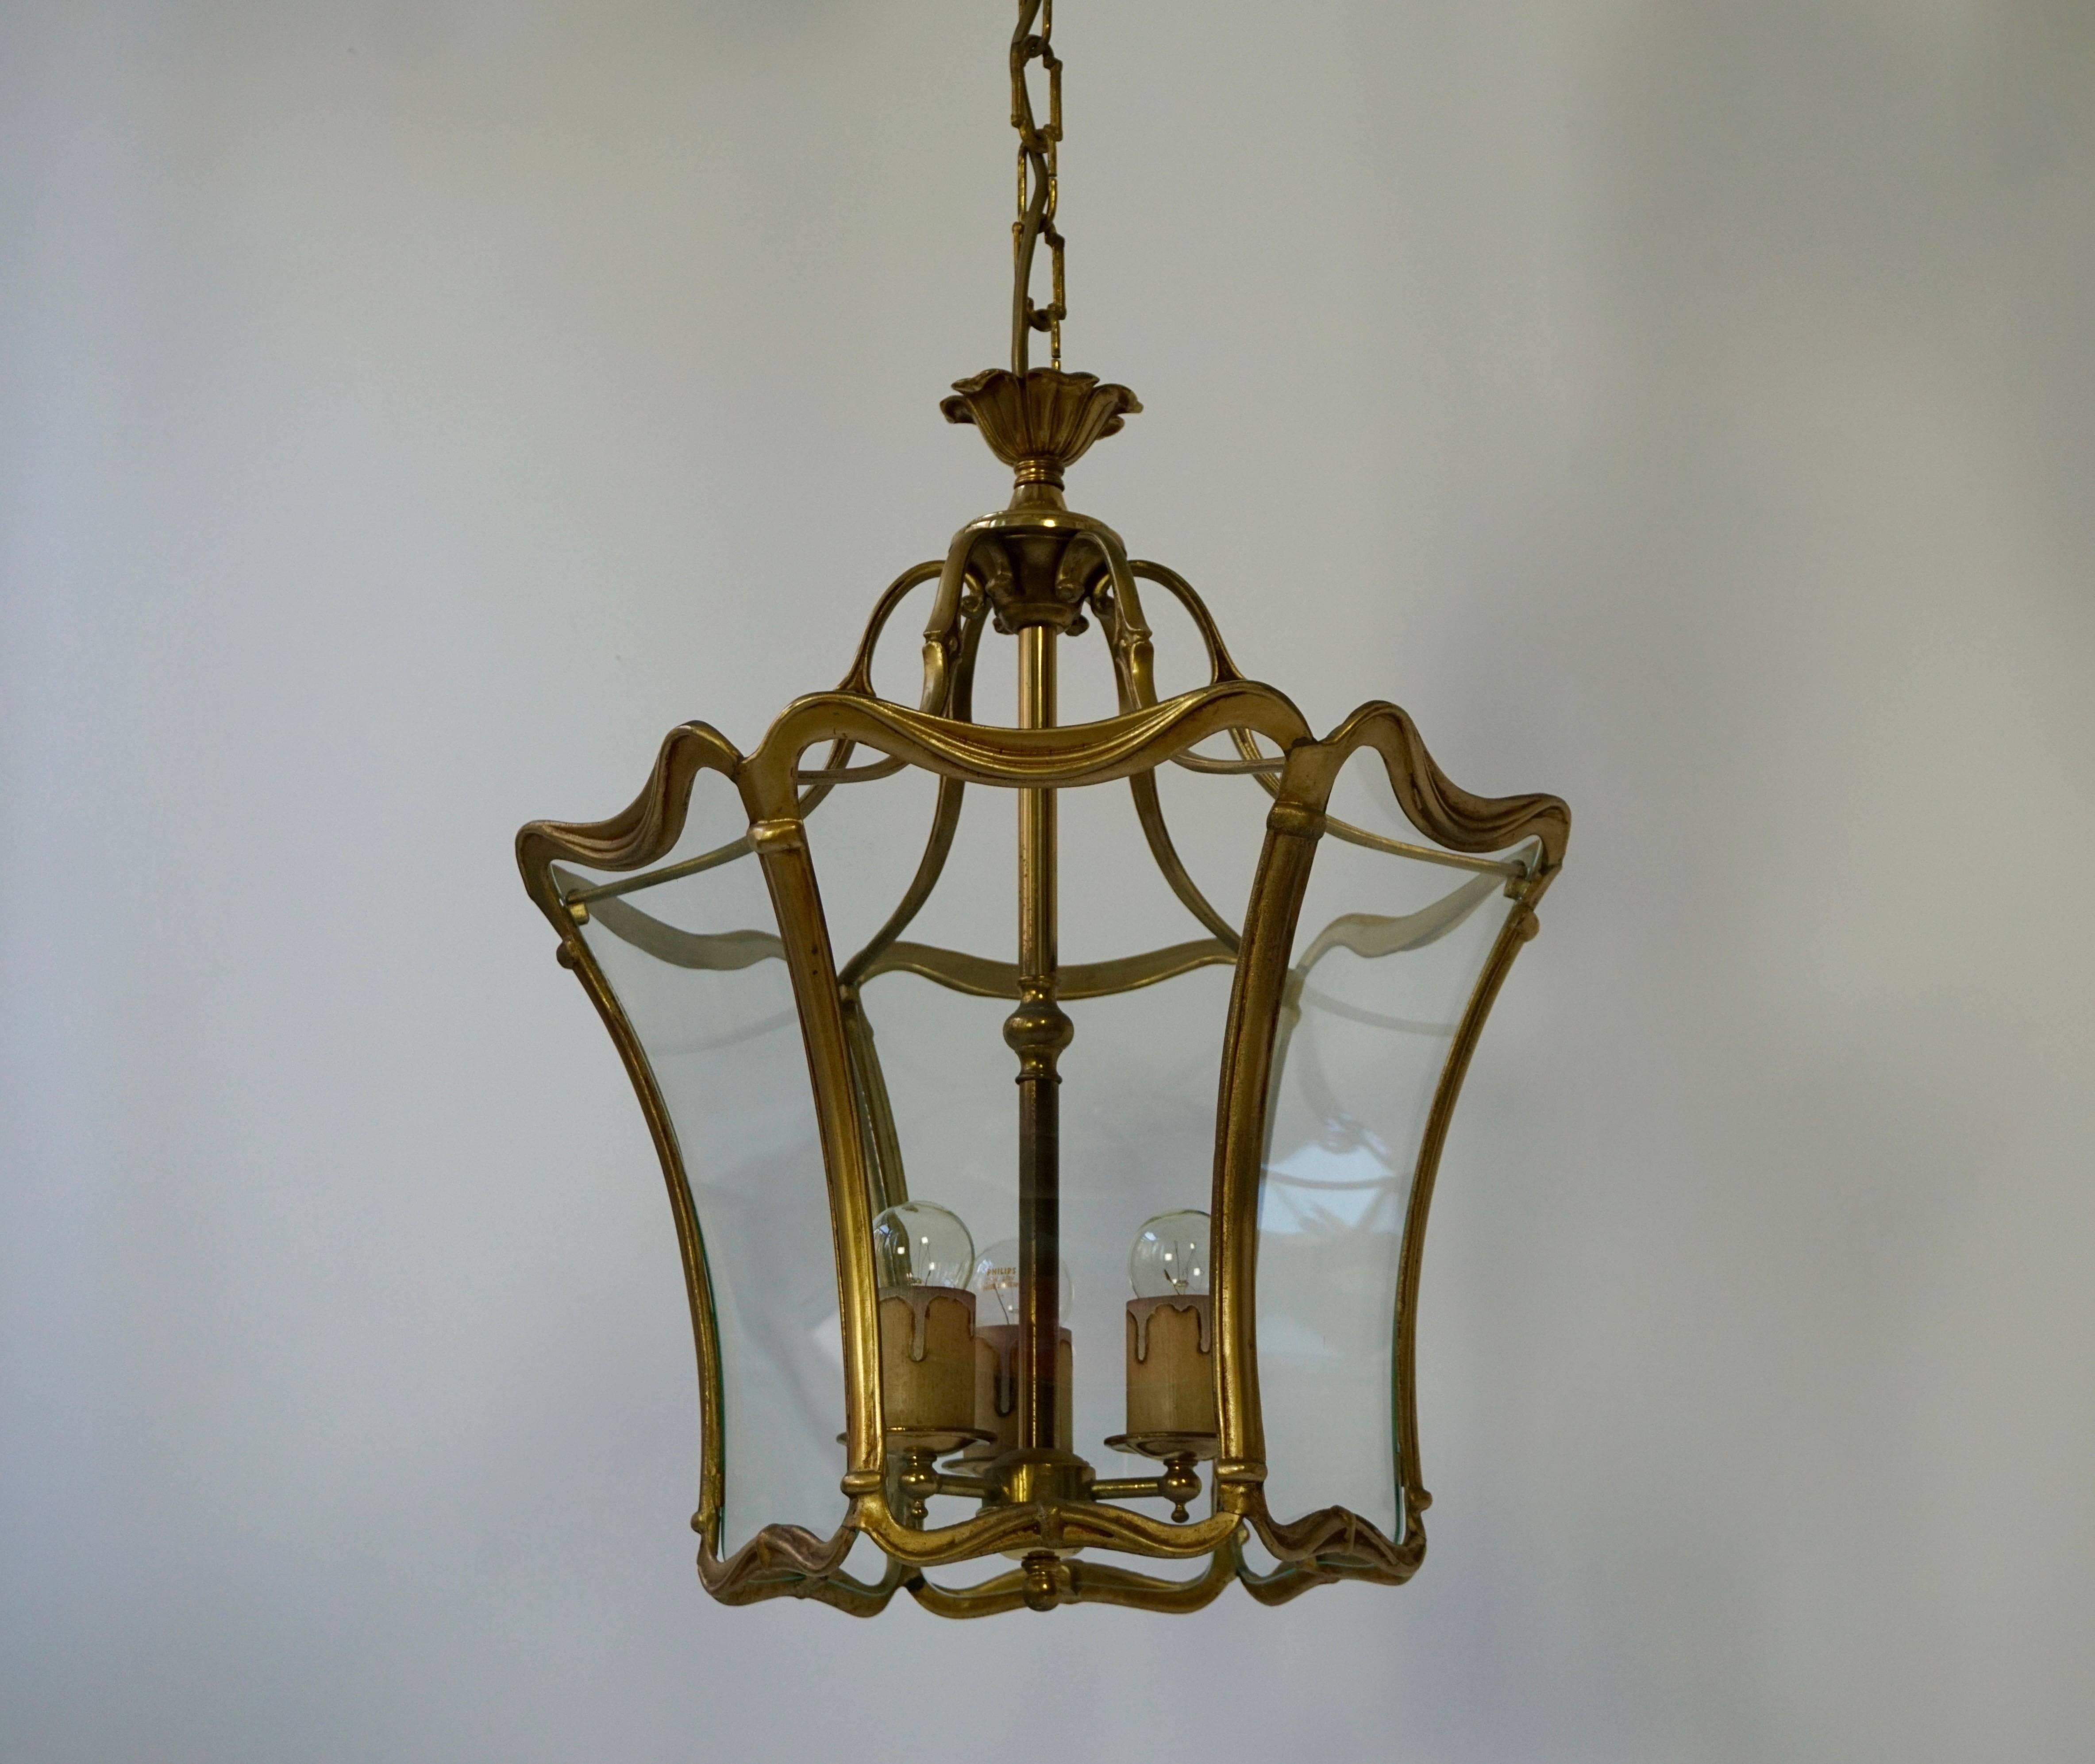 Charmante lanterne de salle en bronze et verre d'époque Art Nouveau, France, 1900-1920. La lanterne est en très bon état, patine vieillie sur le bronze, recâblée avec trois douilles d'ampoules E27. 
Mesures:Hauteur totale avec la chaîne 39